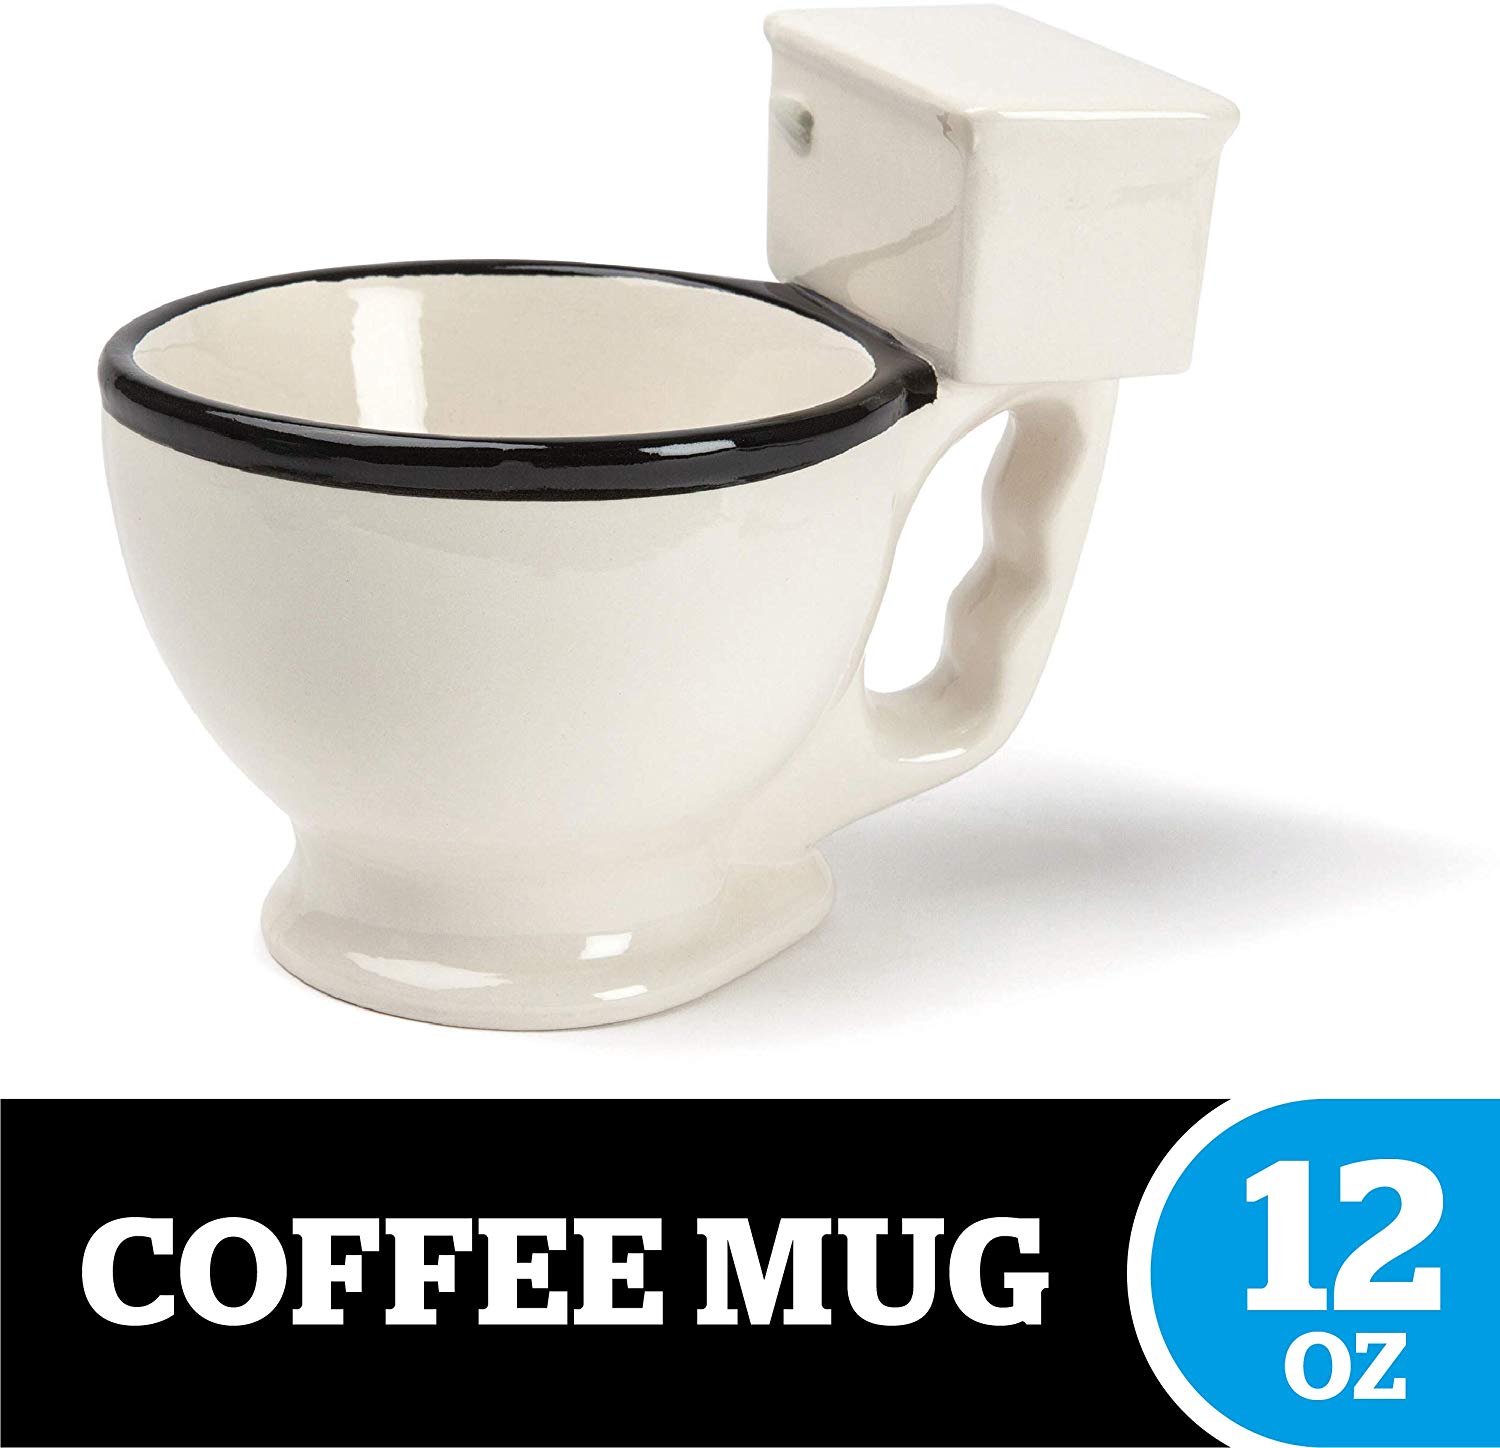 The Original Toilet Mug